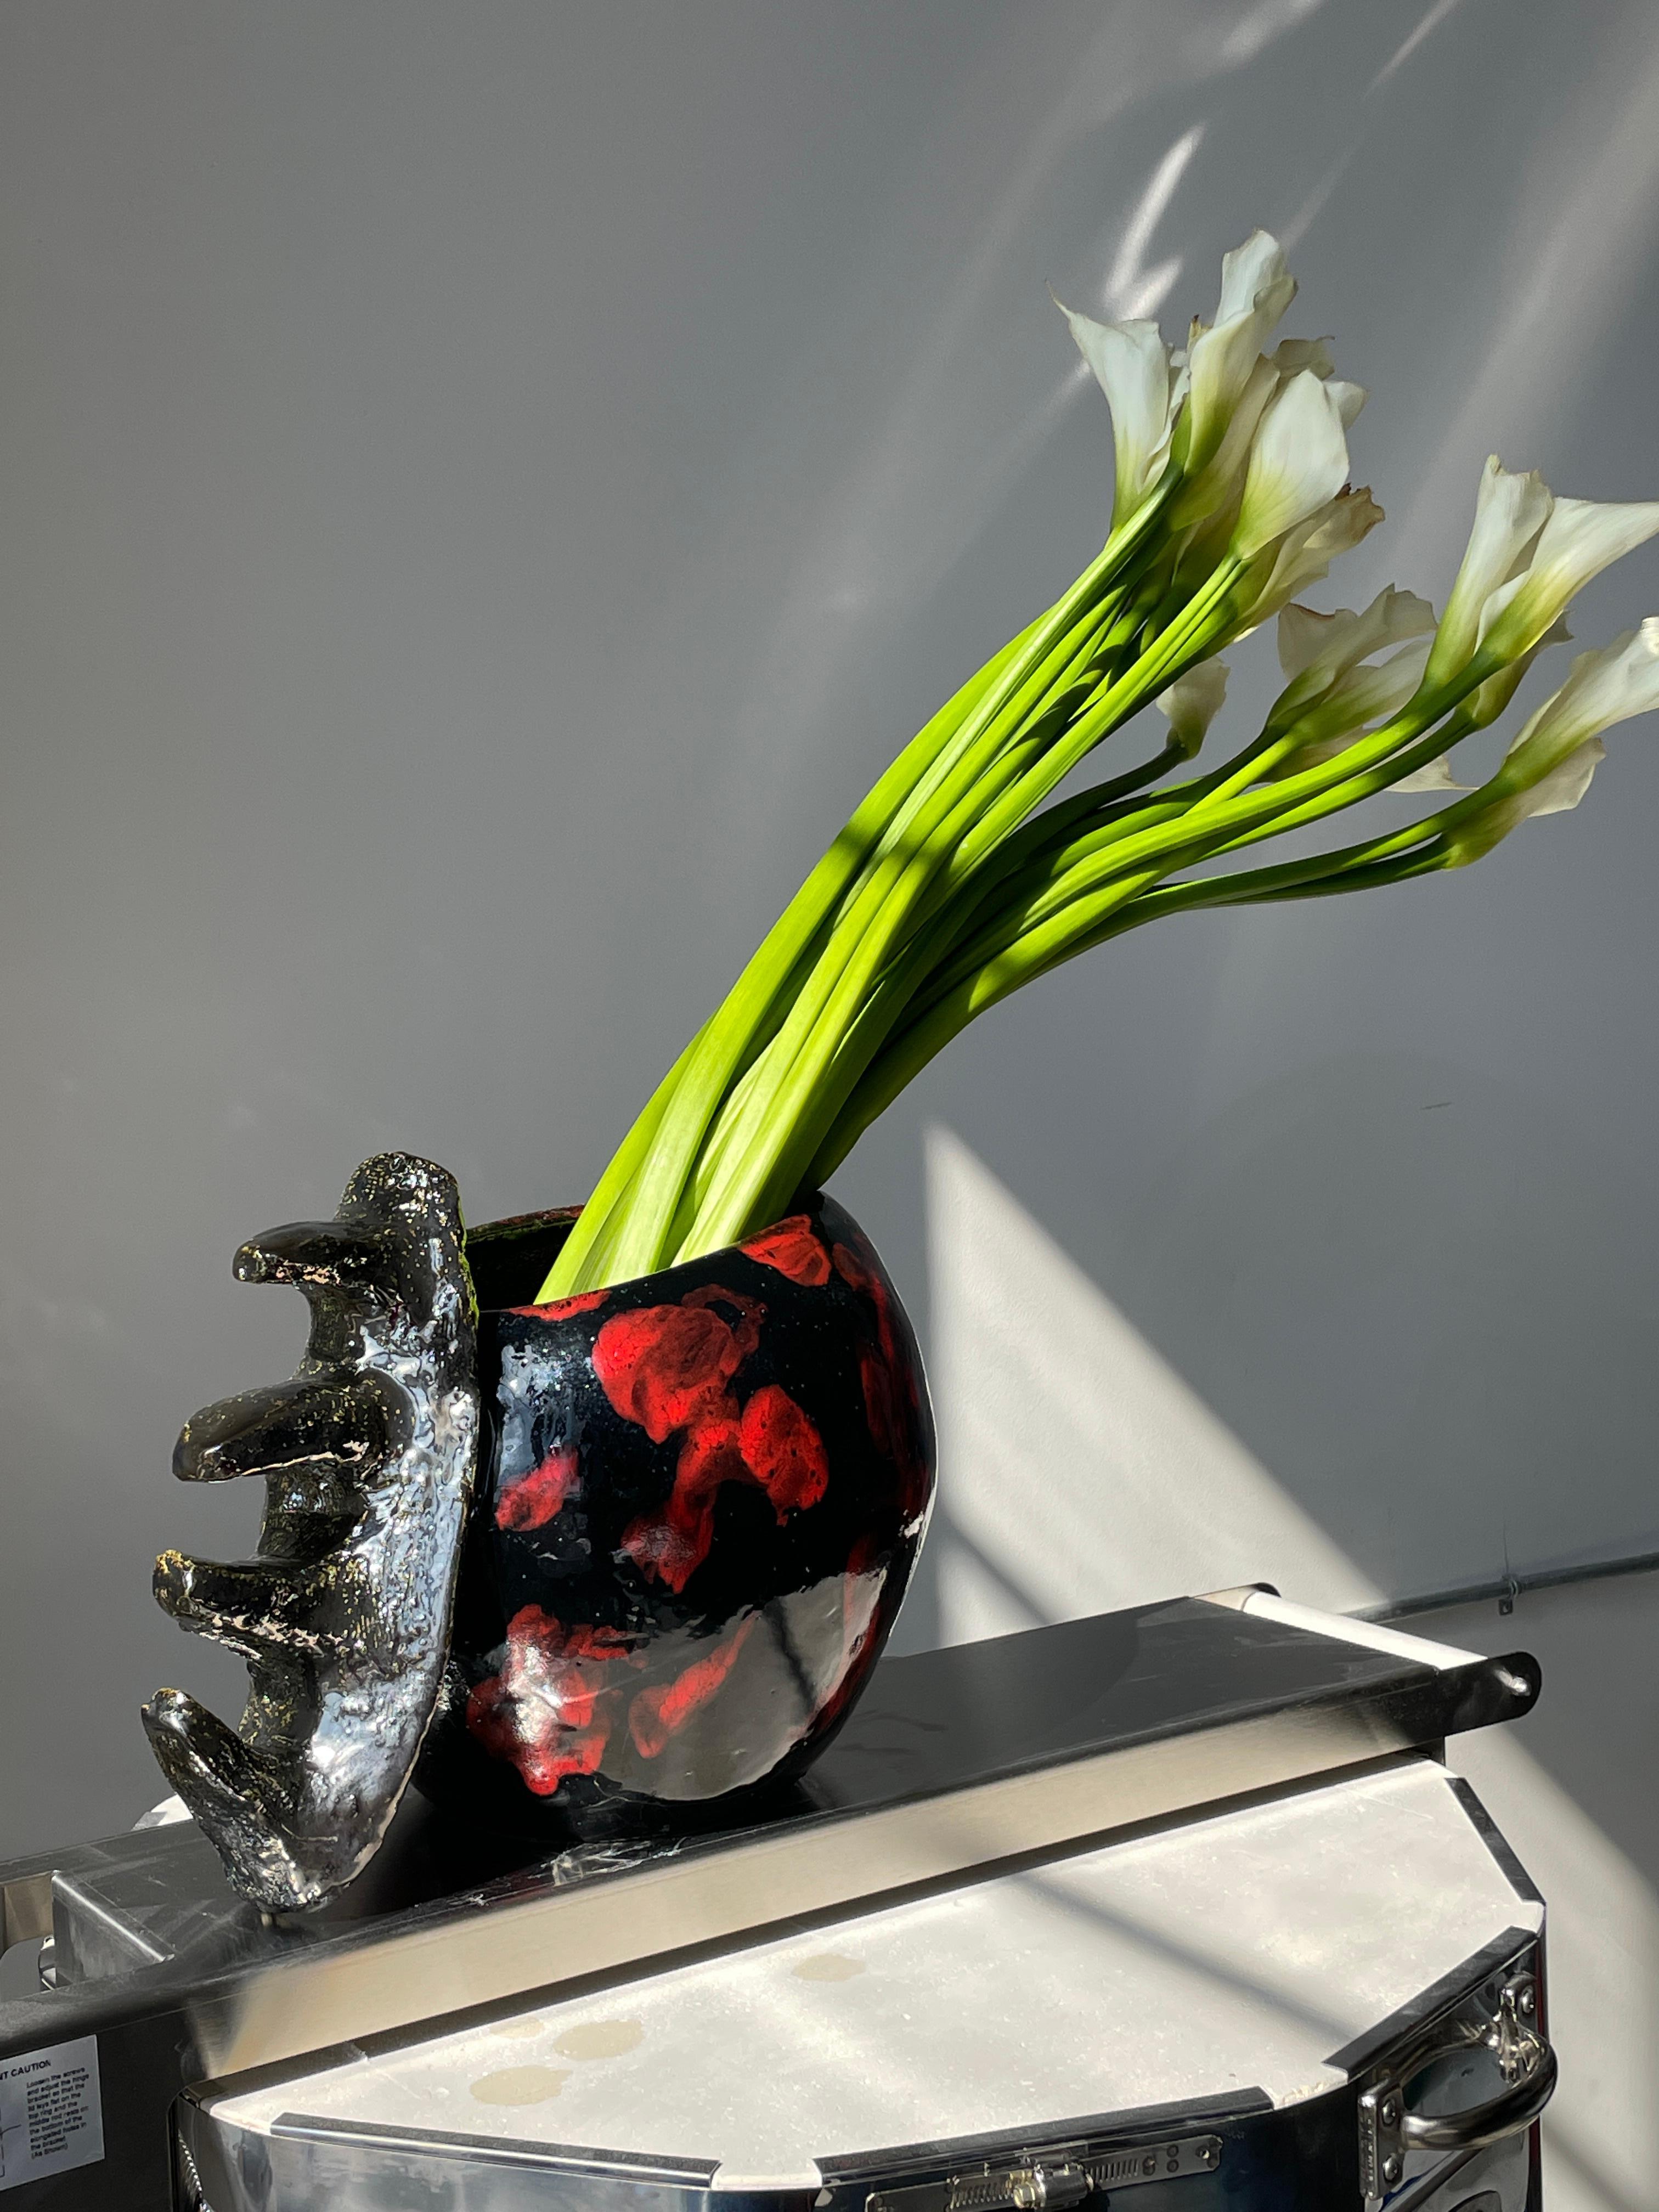 Hand-Carved Detached Knuckler Flower Vase, by Artist Stef Duffy For Sale